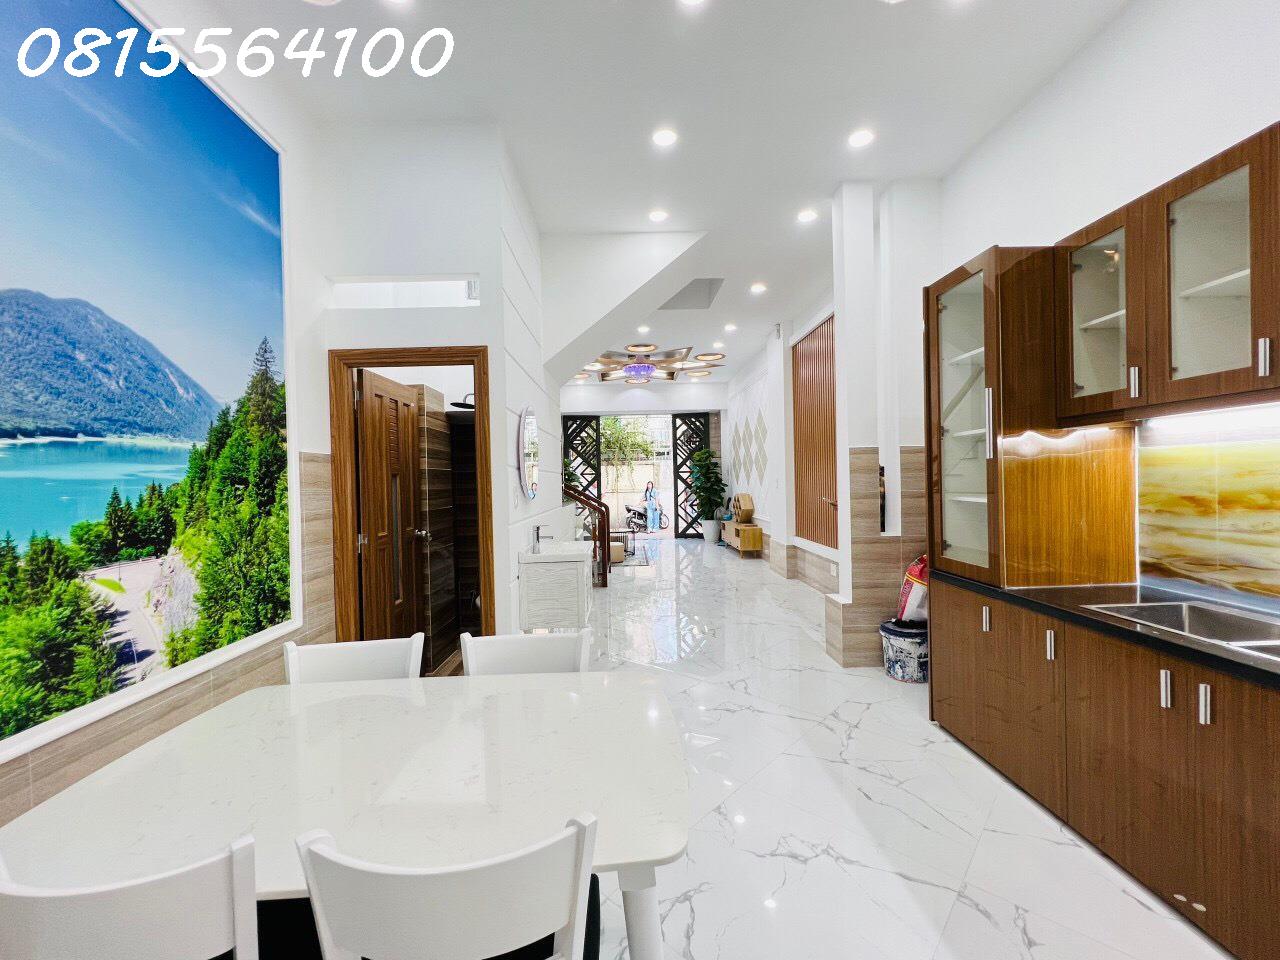 Chính chủ cần bán gấp nhà đẹp HXH Quang trung, Phường 10, Quận Gò Vấp. DT: 4x12.2m trệt 3 lầu Giá 6.1 tỷ